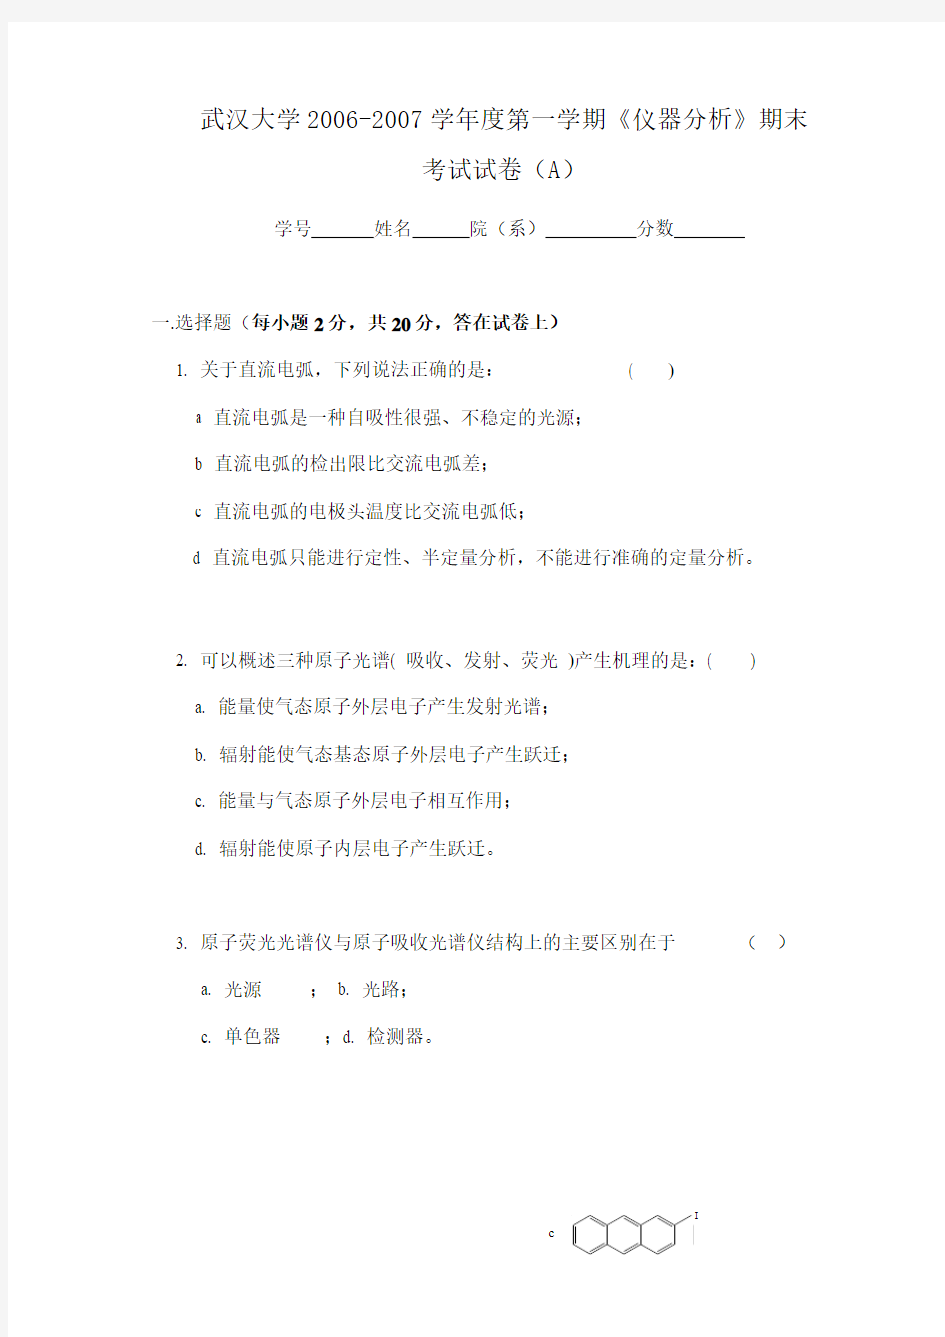 武汉大学2006-2007学年度第一学期《仪器分析》期末考试试卷(A)